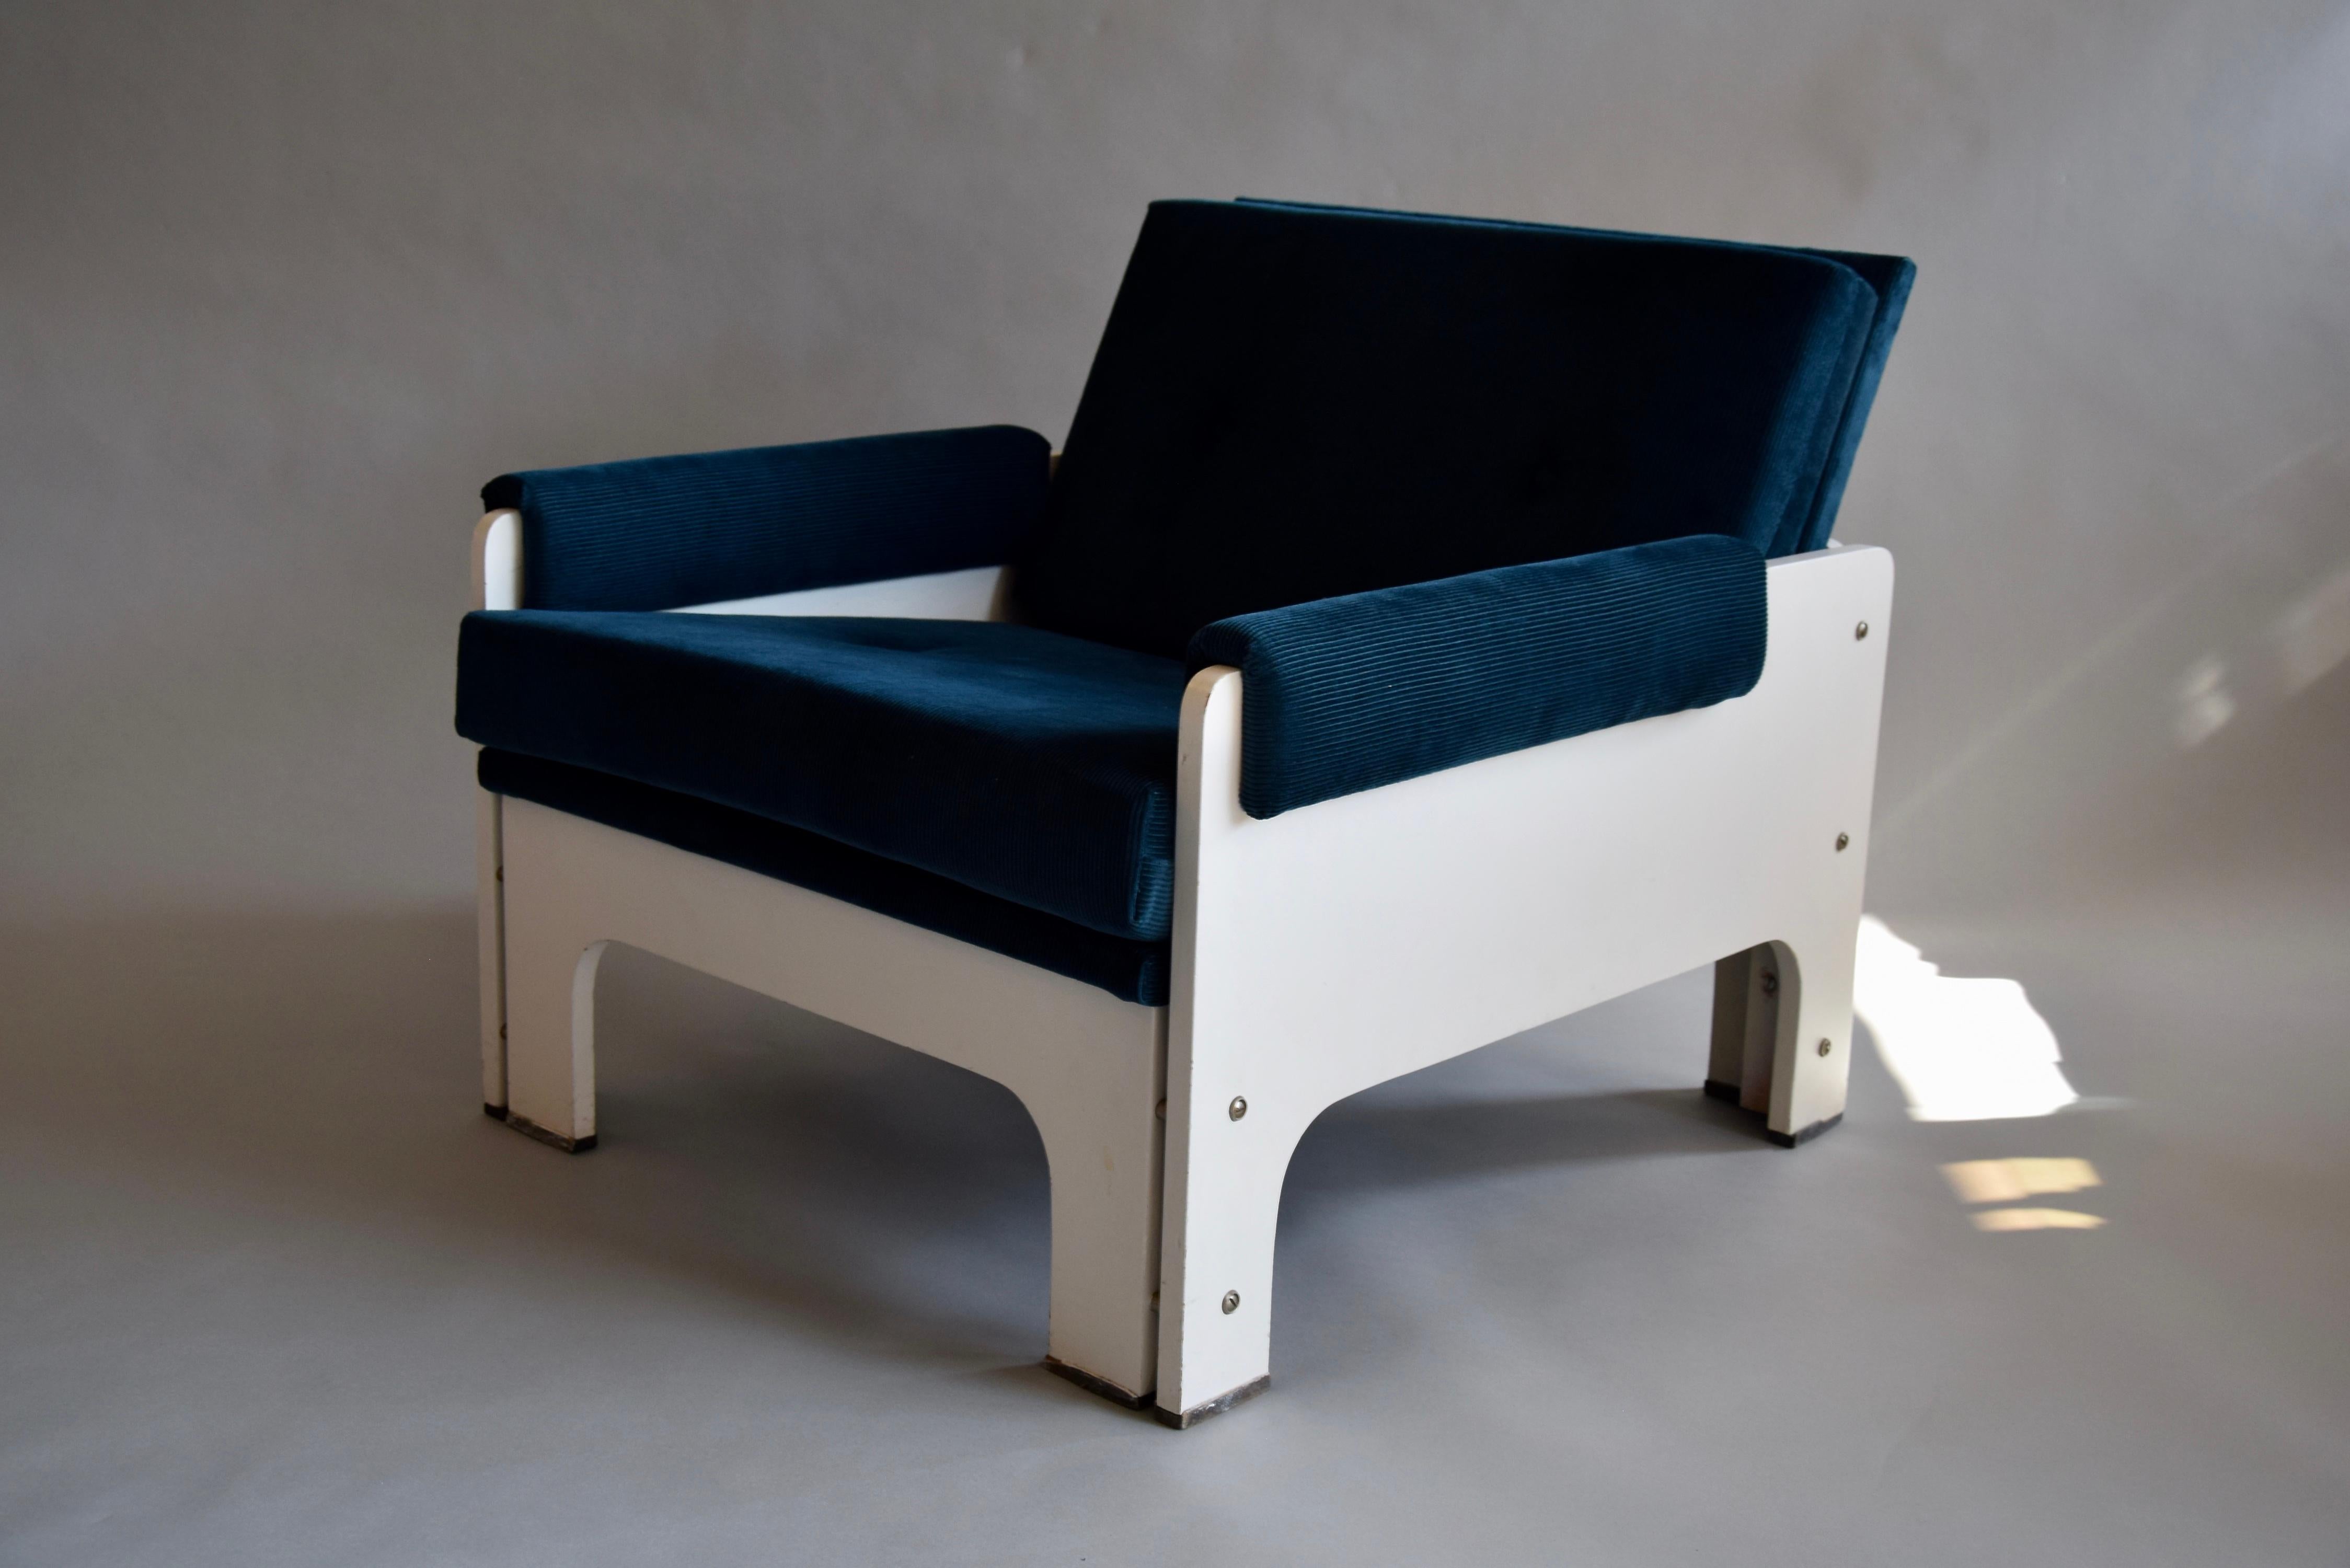 Fauteuil de salon élégant bleu et blanc, retapissé, de style moderne du milieu du siècle dernier, conçu par Martin Visser pour Spectrum aux Pays-Bas.
Martin Visser était l'un des principaux designers néerlandais du milieu du siècle dernier, avec